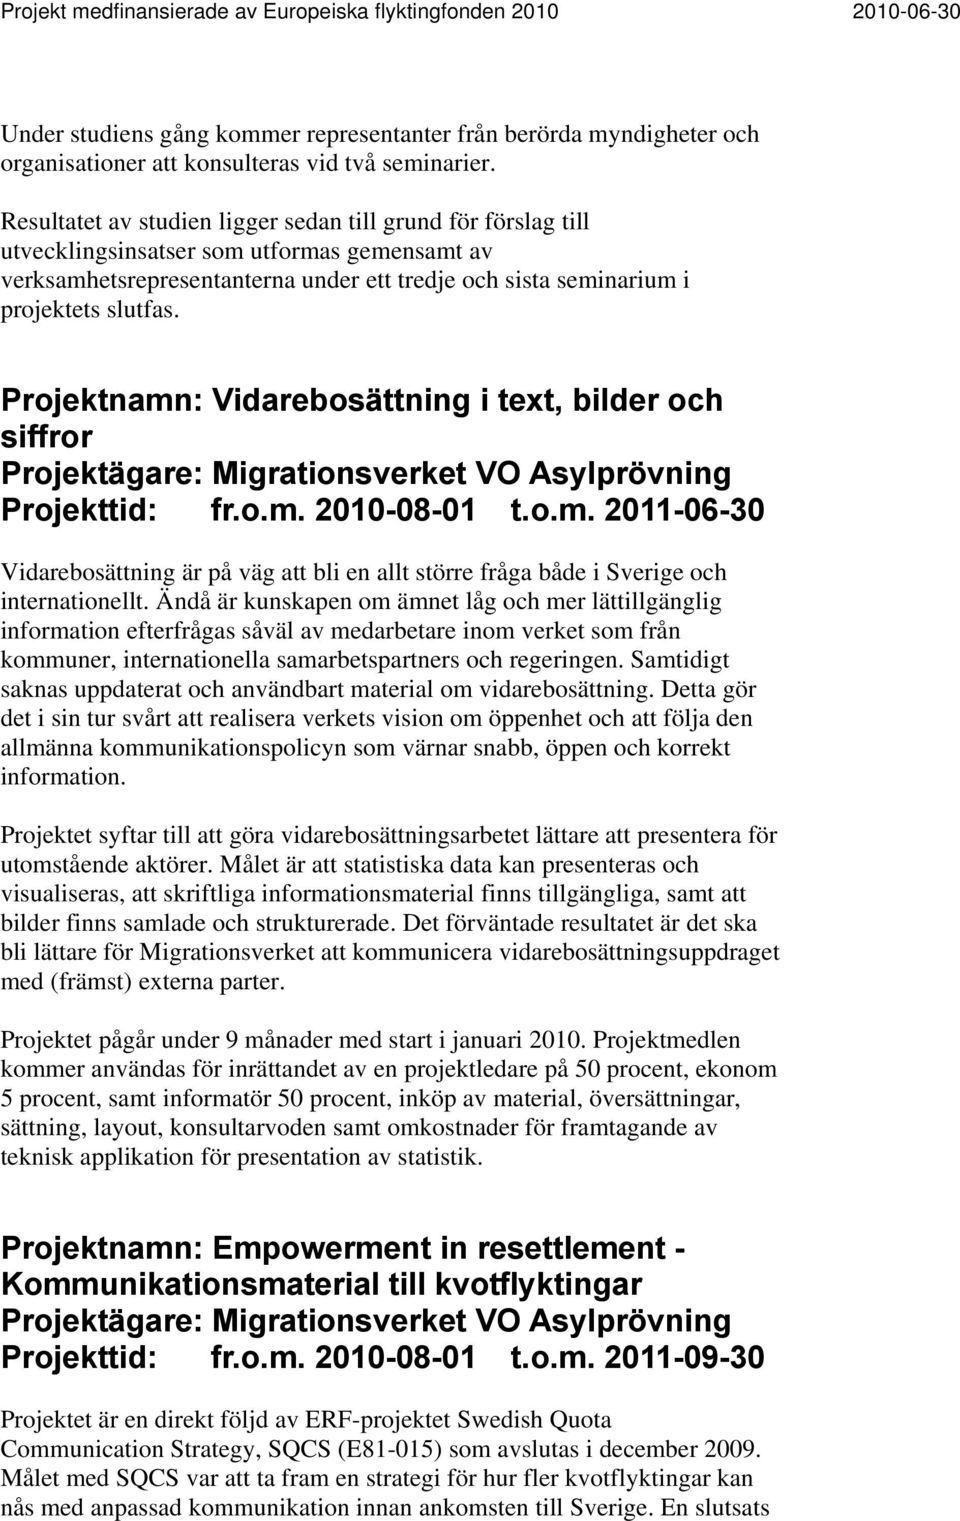 Projektnamn: Vidarebosättning i text, bilder och siffror Projektägare: Migrationsverket VO Asylprövning Projekttid: fr.o.m. 2010-08-01 t.o.m. 2011-06-30 Vidarebosättning är på väg att bli en allt större fråga både i Sverige och internationellt.